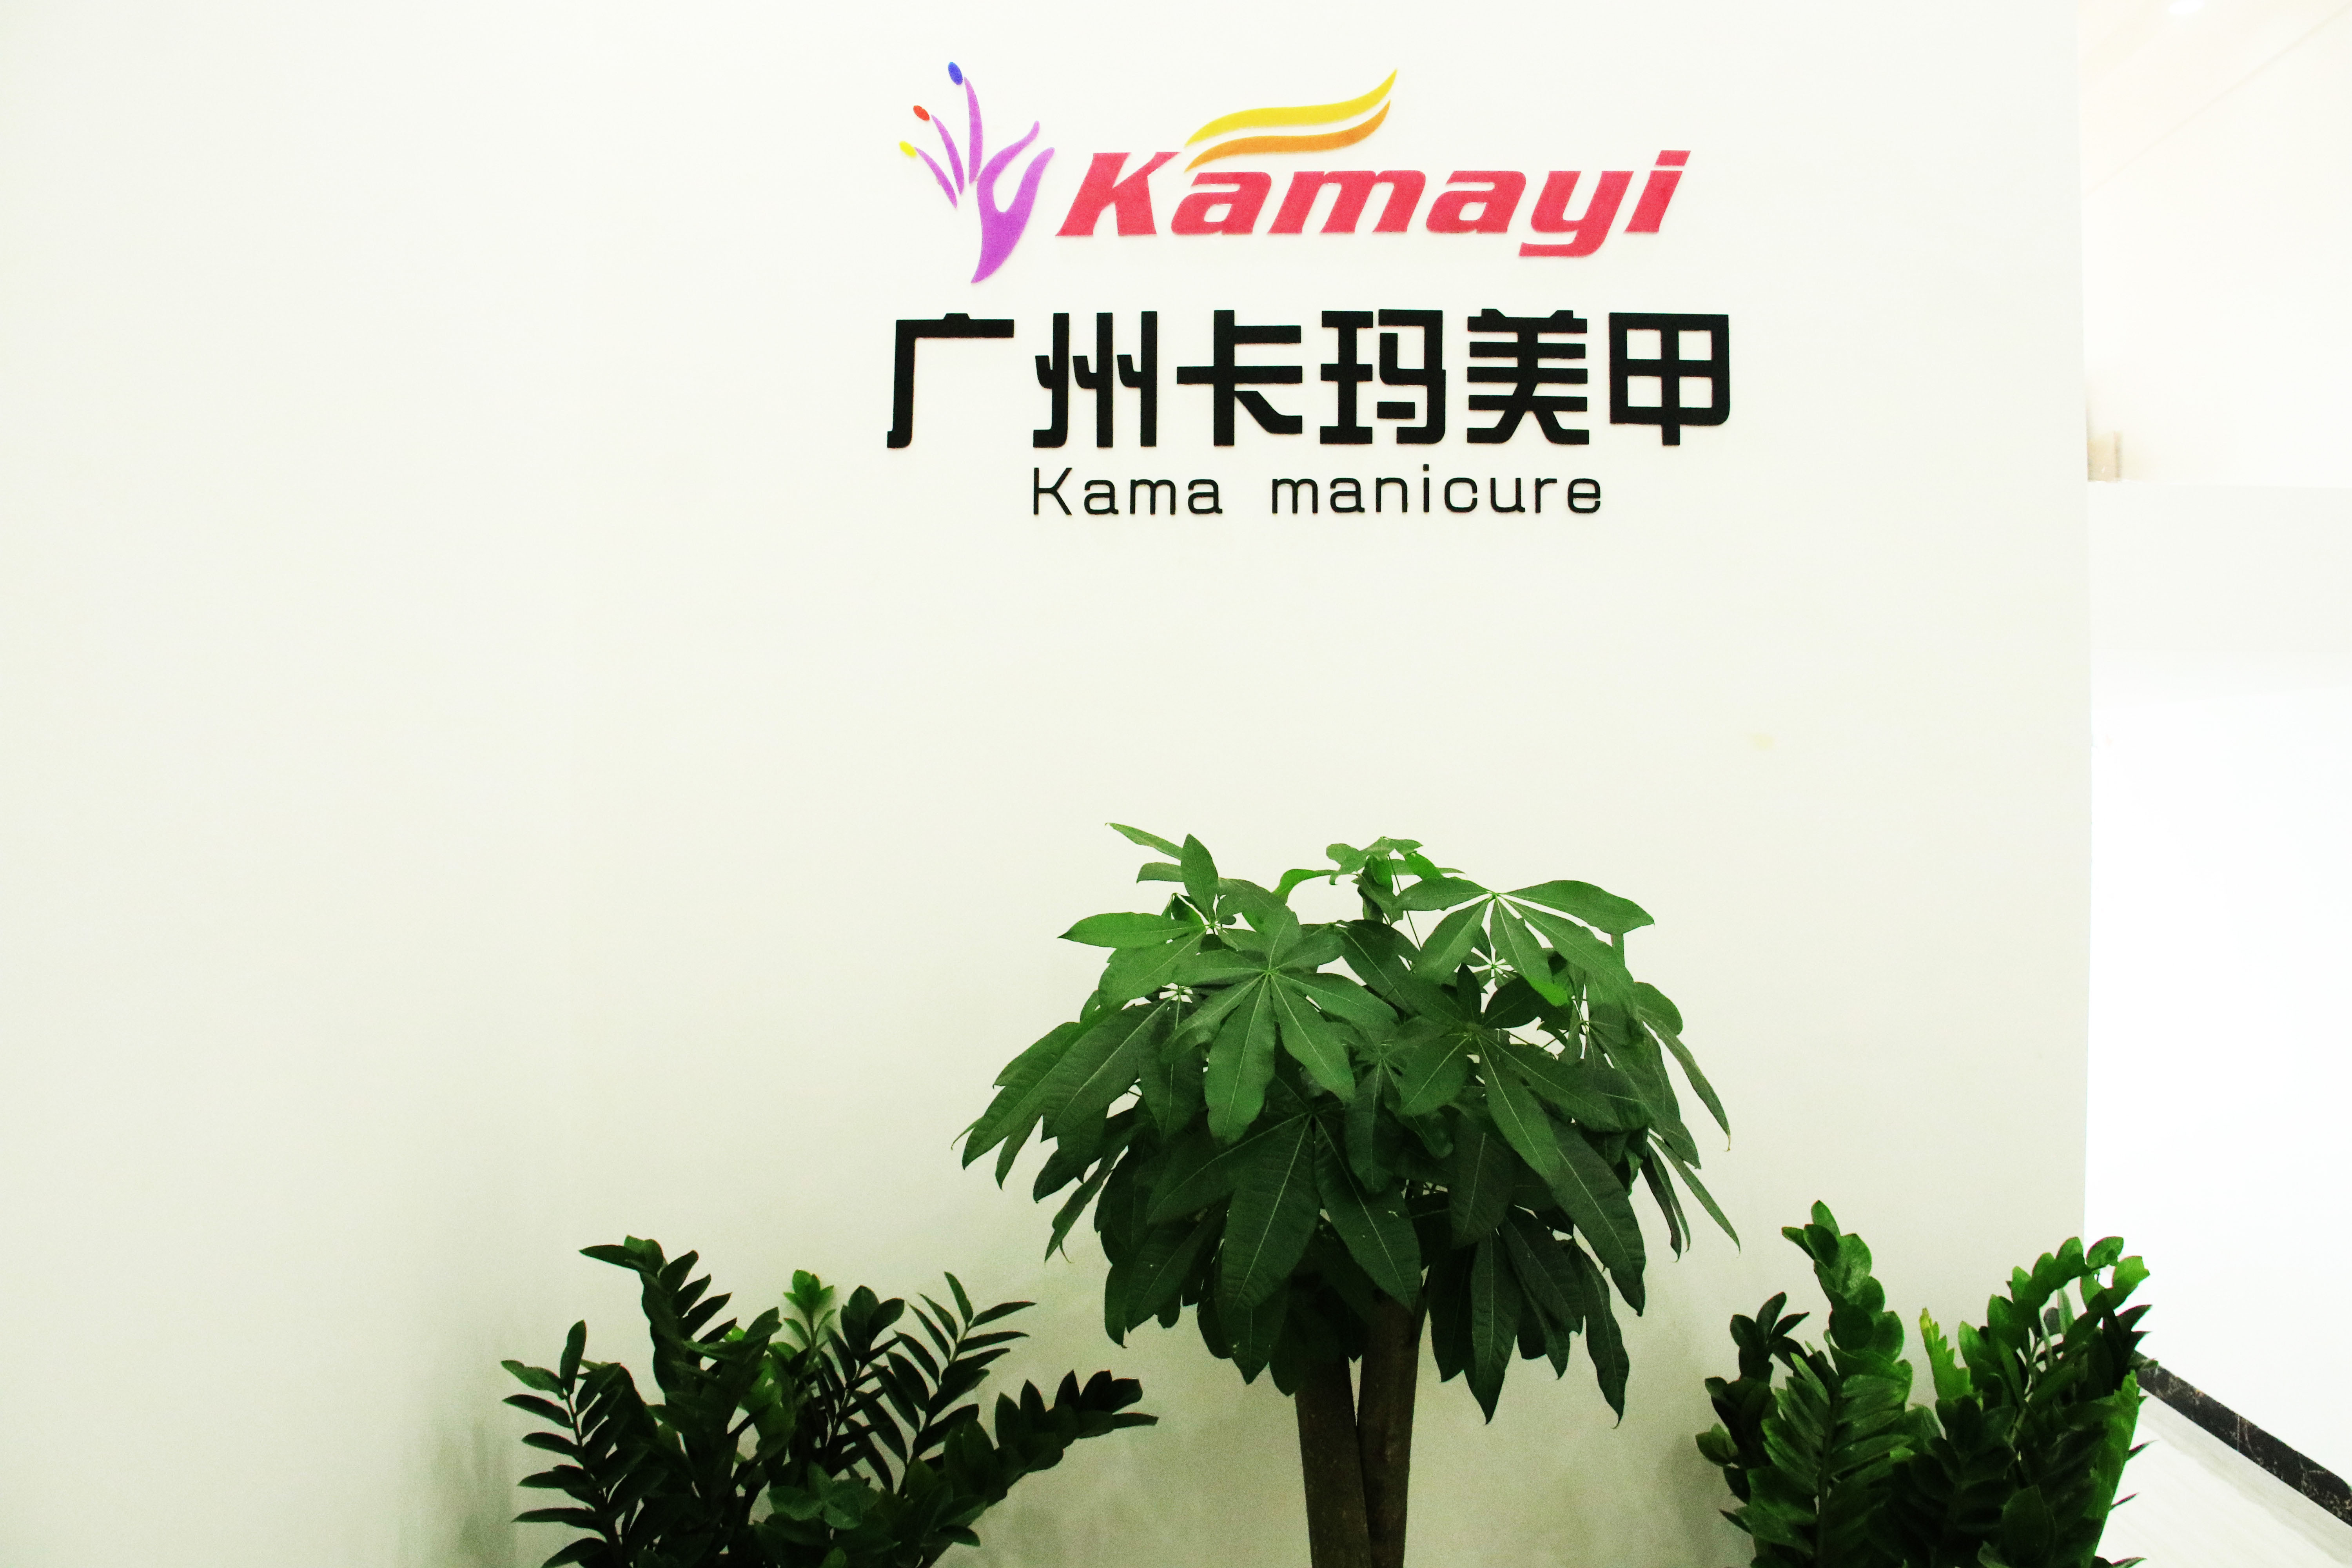 China Guangzhou Kama Manicure Products Ltd.